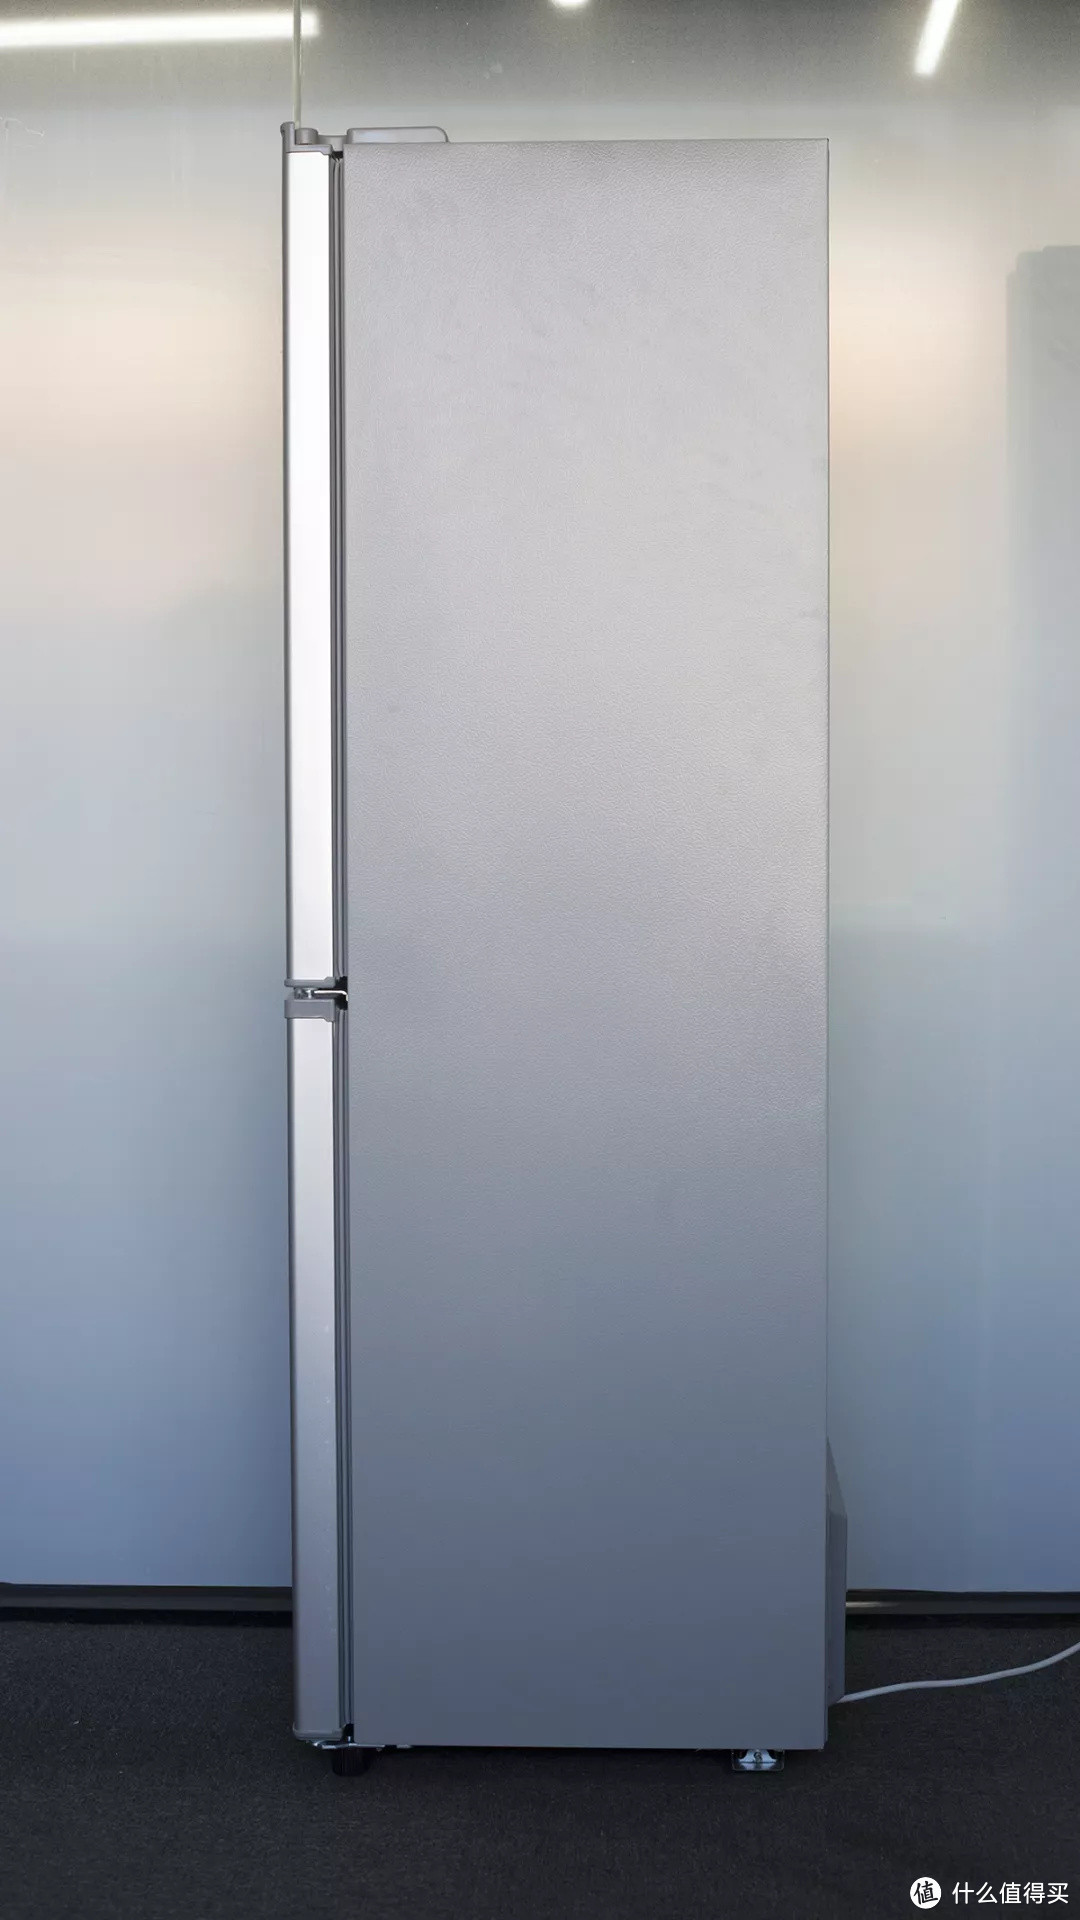 小米999元冰箱开箱 保鲜效果实测，小冰箱大容量对得起性价比